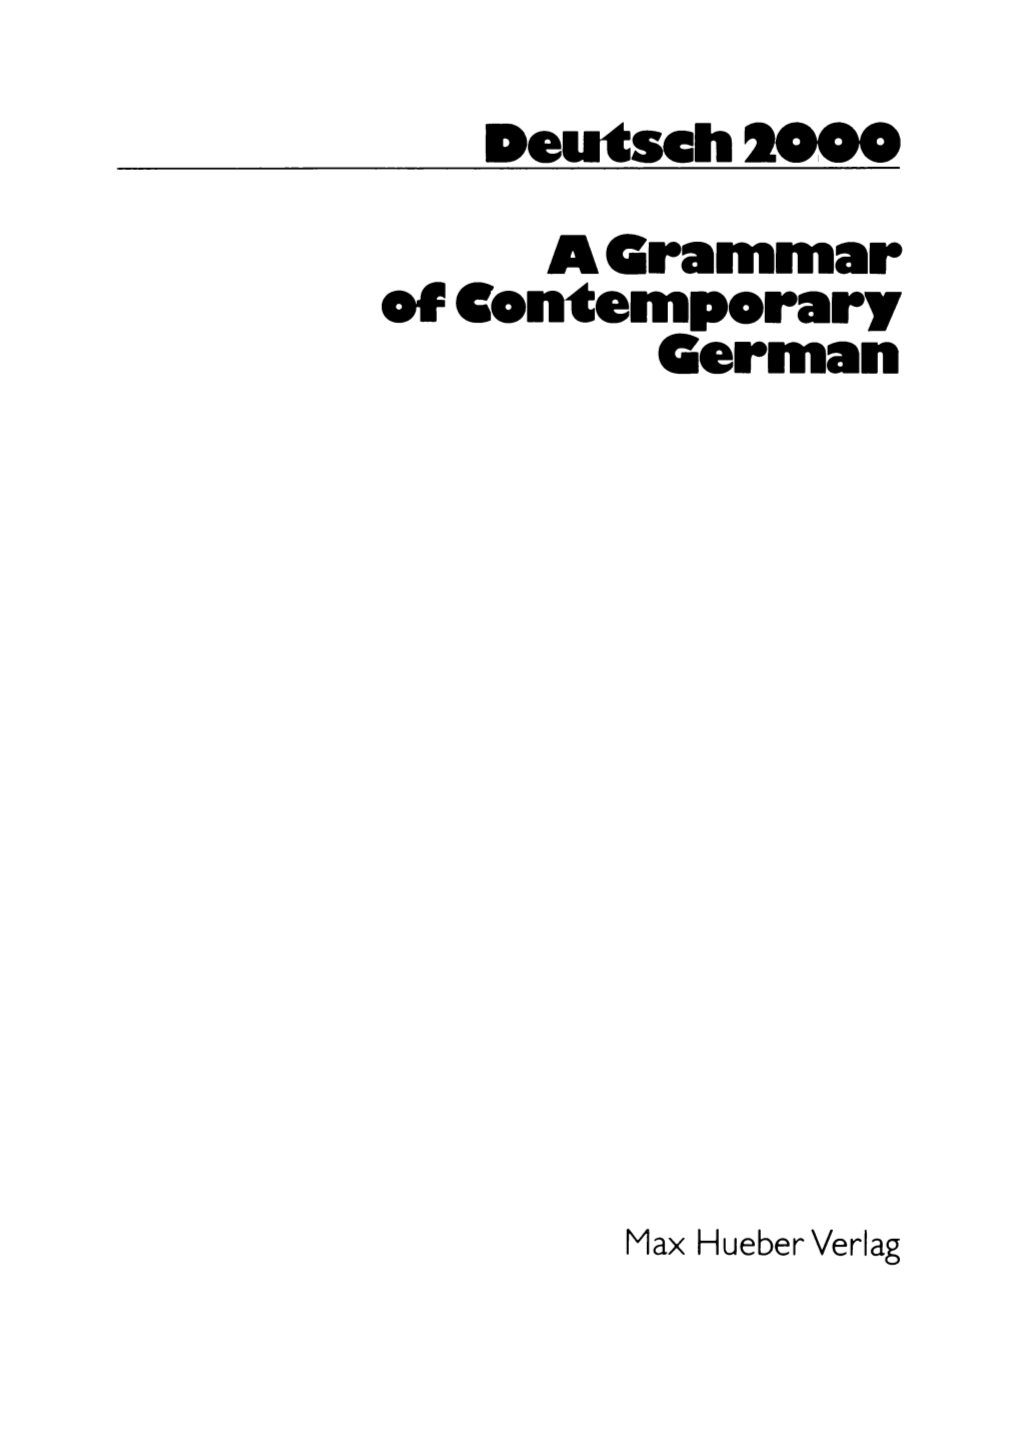 A Grammar of Contemporary German